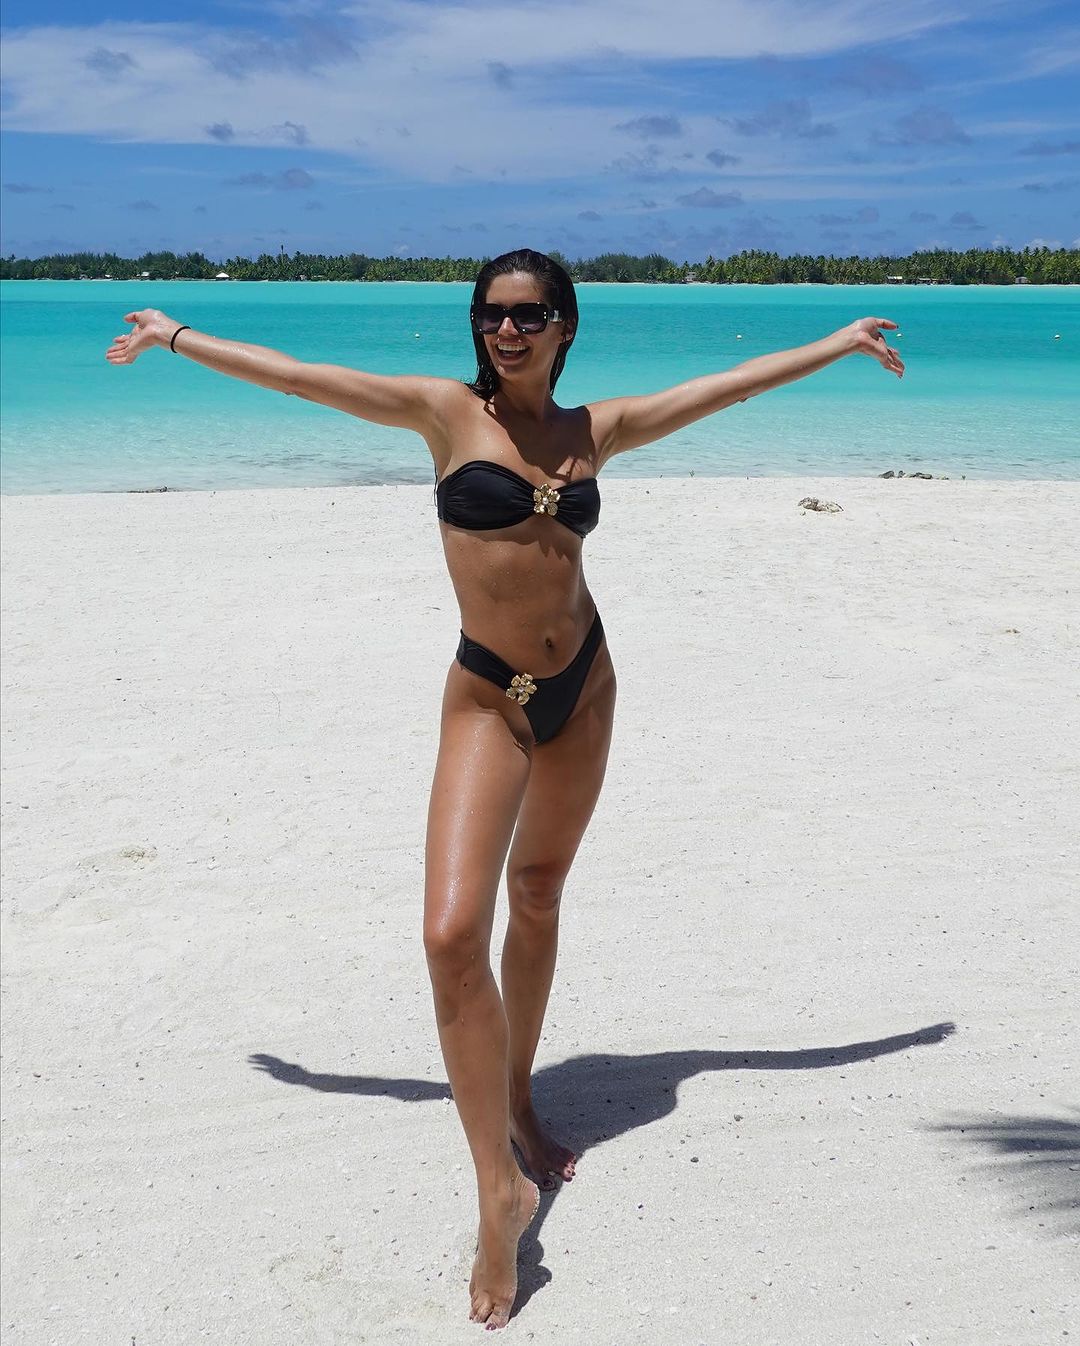 Photos n°6 : Sara Sampaio’s Bikini in Bora Bora!